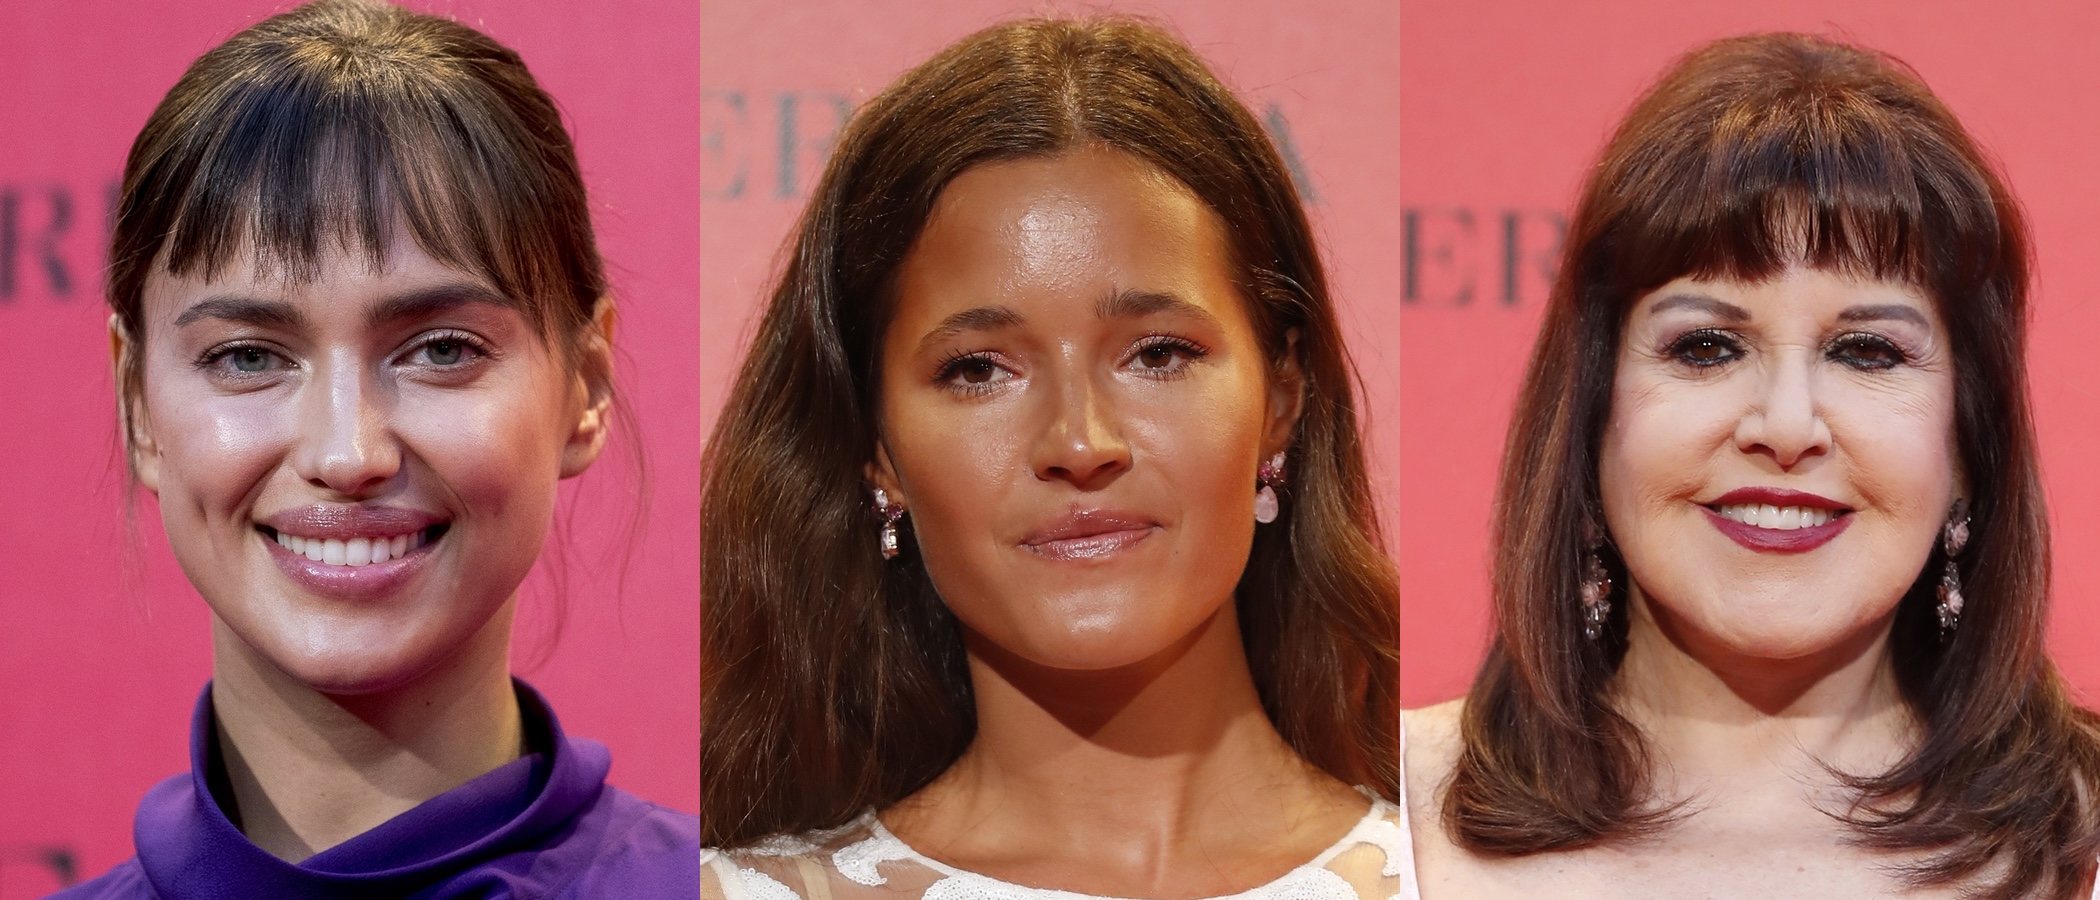 Loles León, Raquel Sánchez Silva y Malena Costa, entre los peores beauty looks de la semana